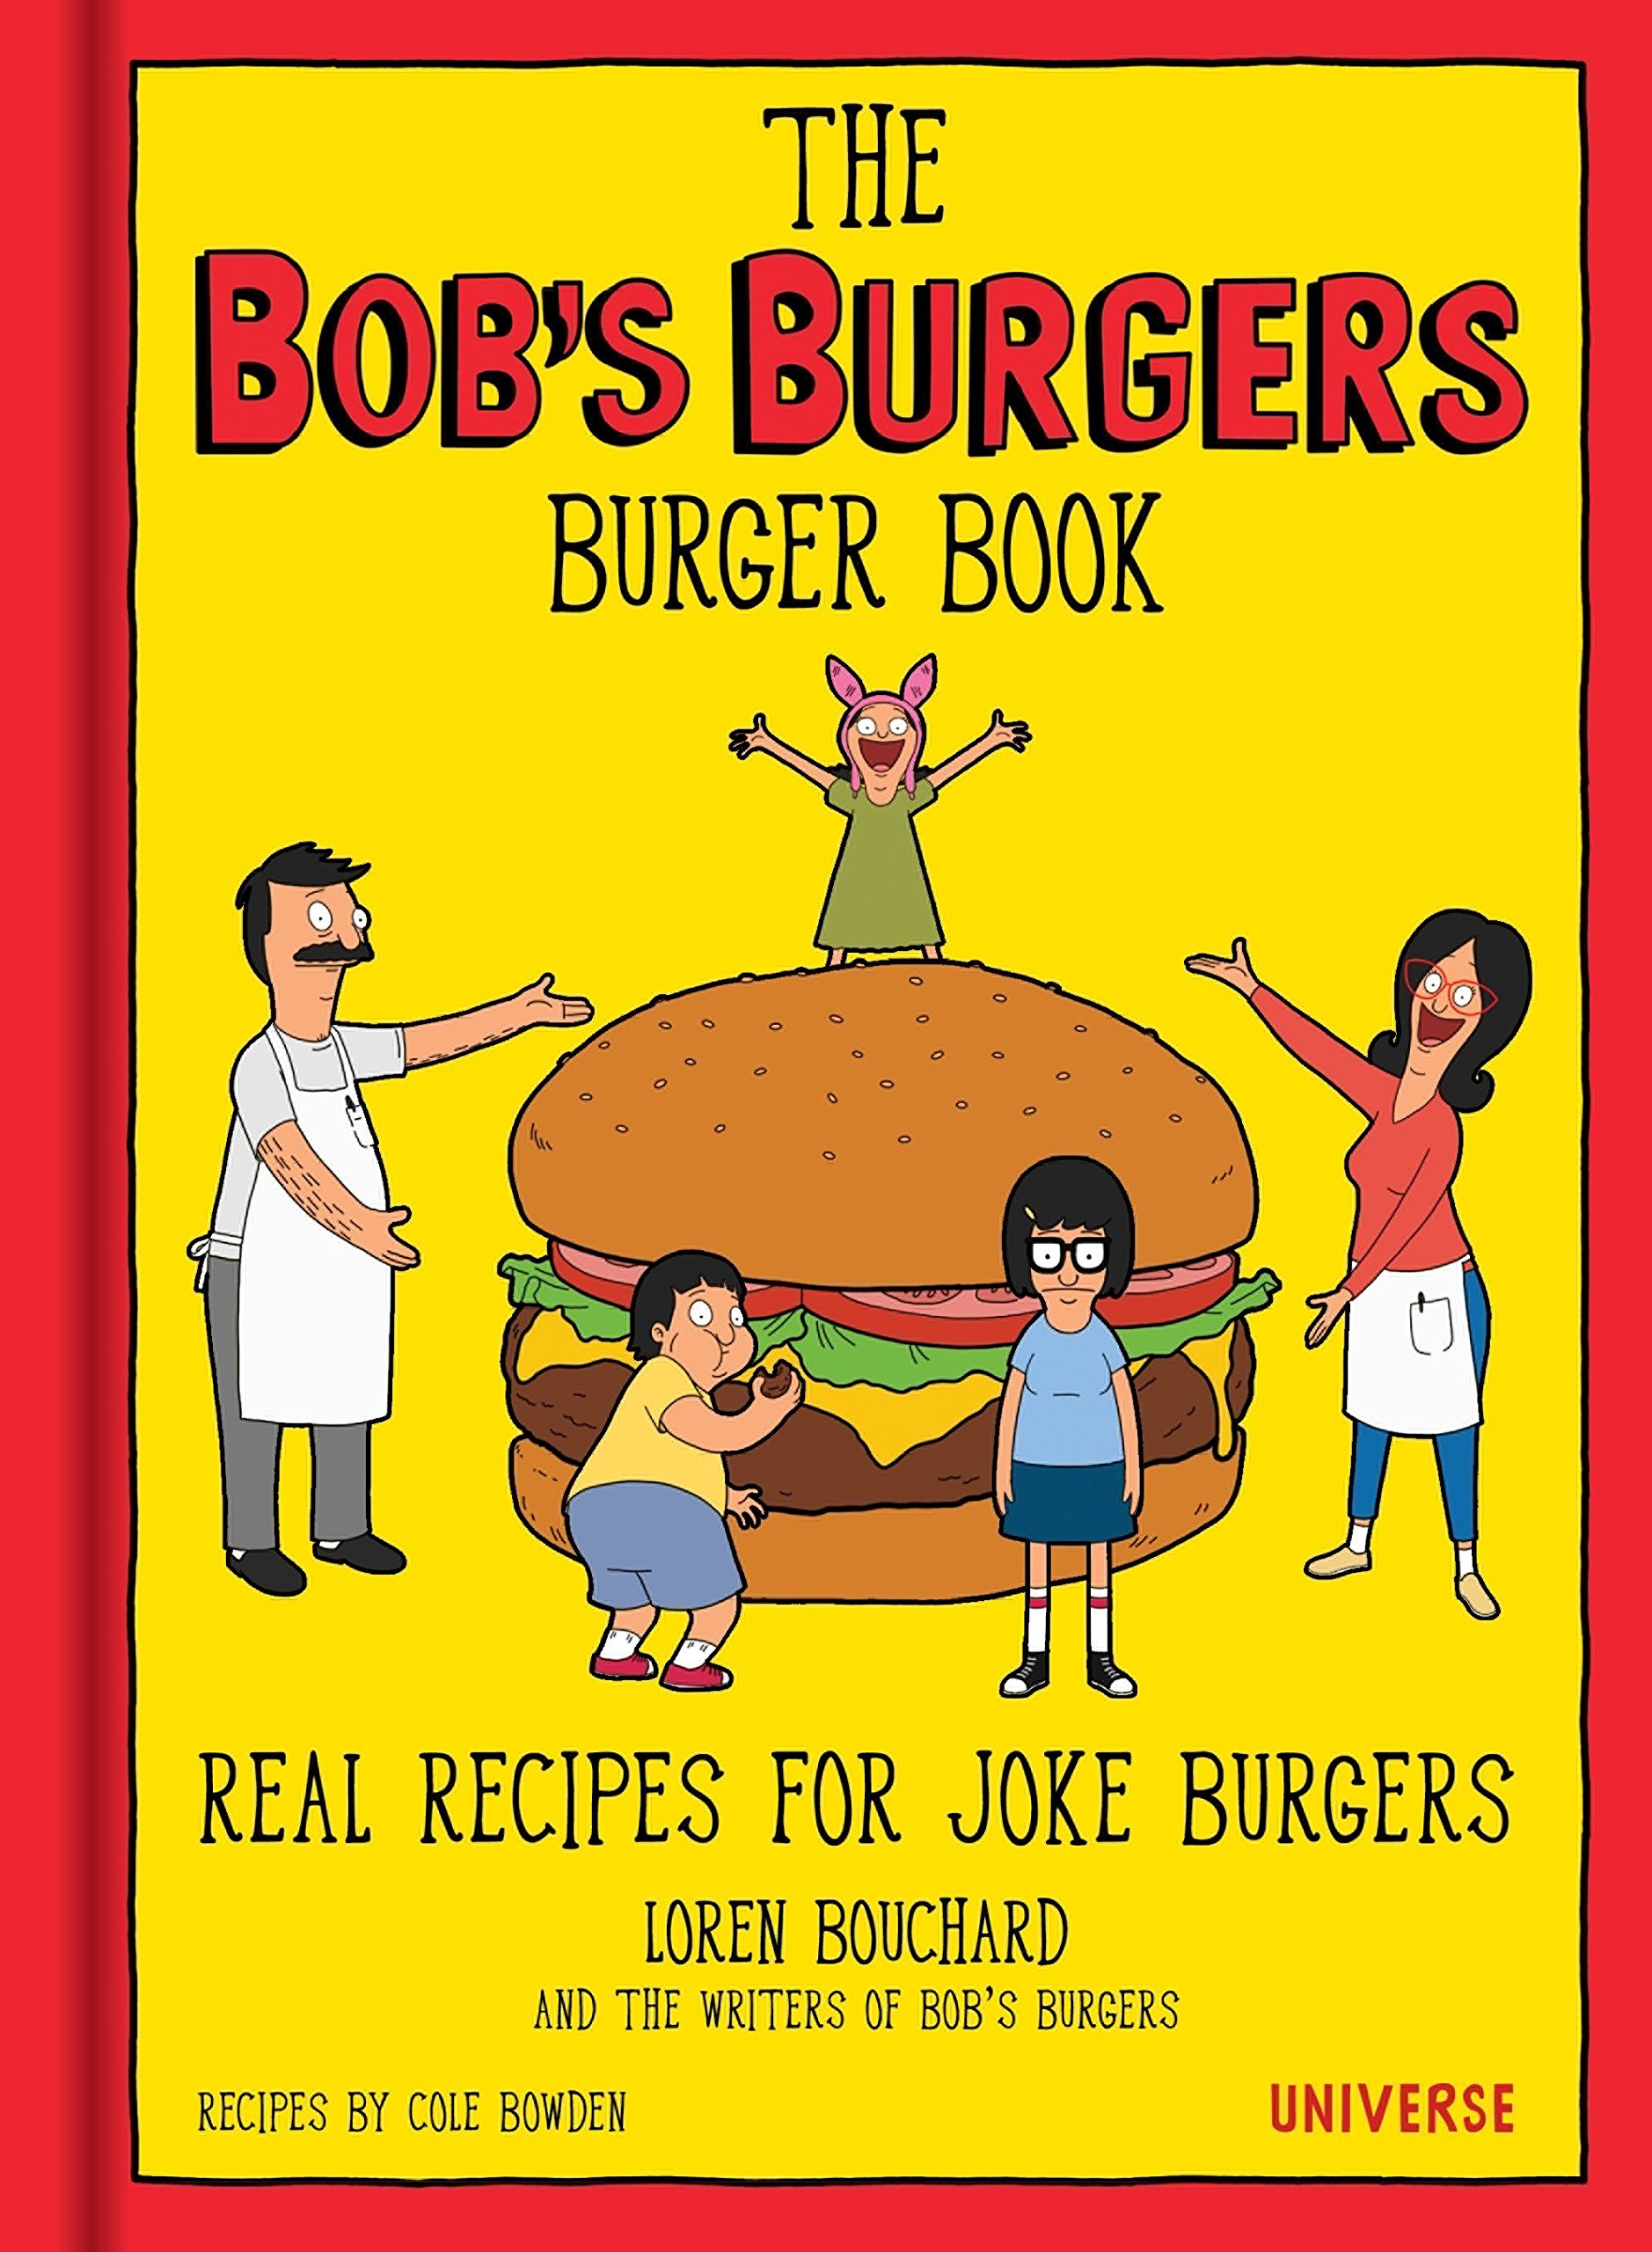 bobs burgers recipes - The Bob'S Burgers Burger Book Real Recipes For Joke Burgers Loren Bouchard And The Writers Of Bob'S Burgers Recipes By Cole Bowden Universe